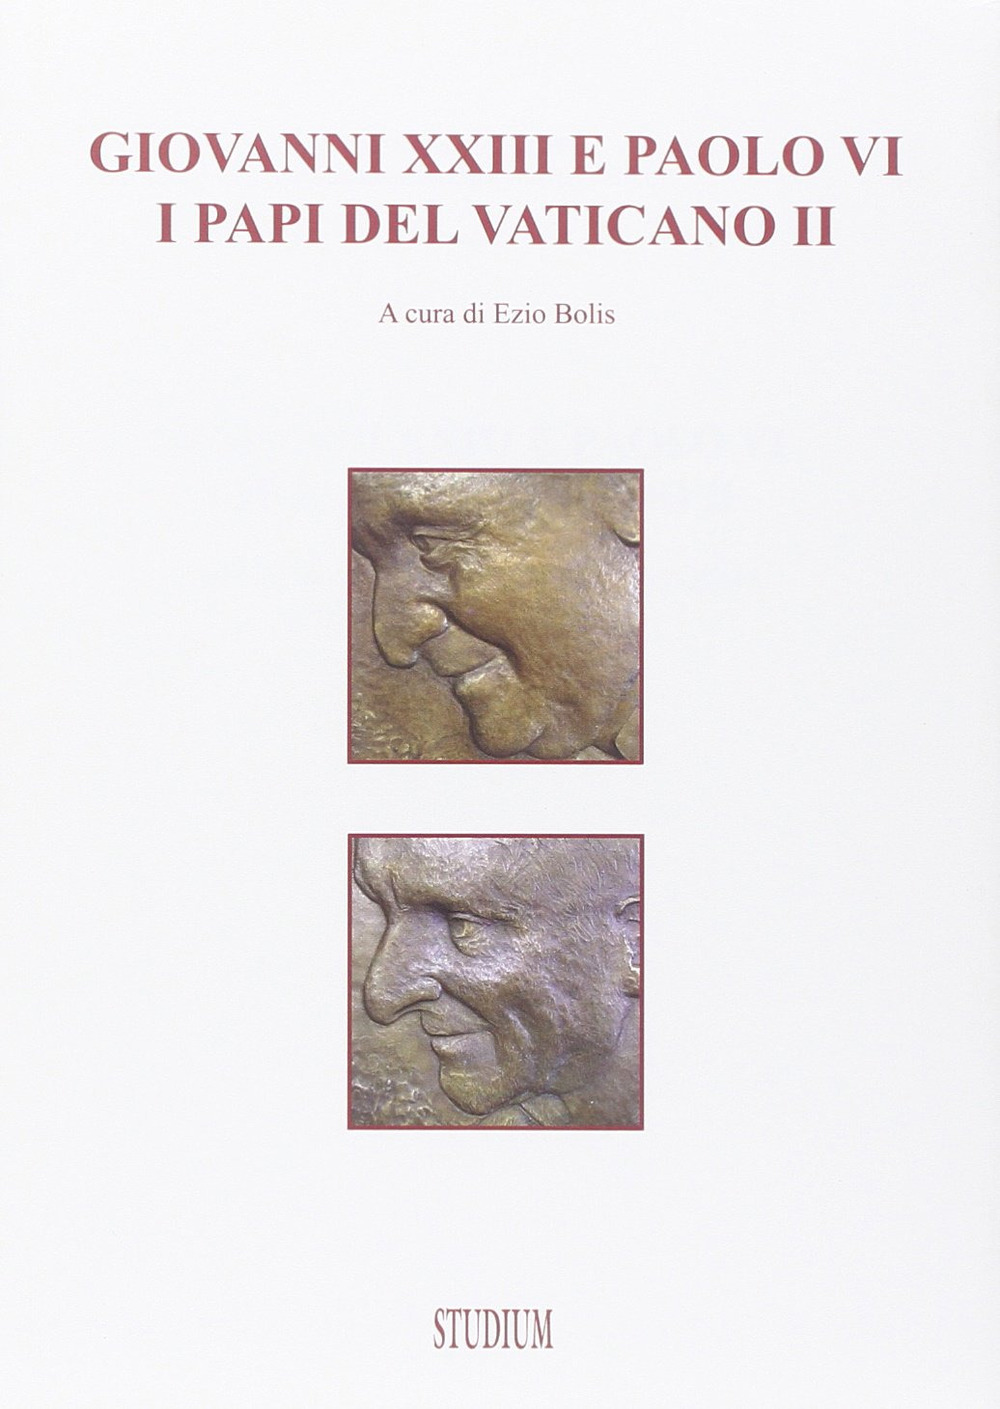 Image of Giovanni XXIII e Paolo VI§§§I papi del Vaticano II